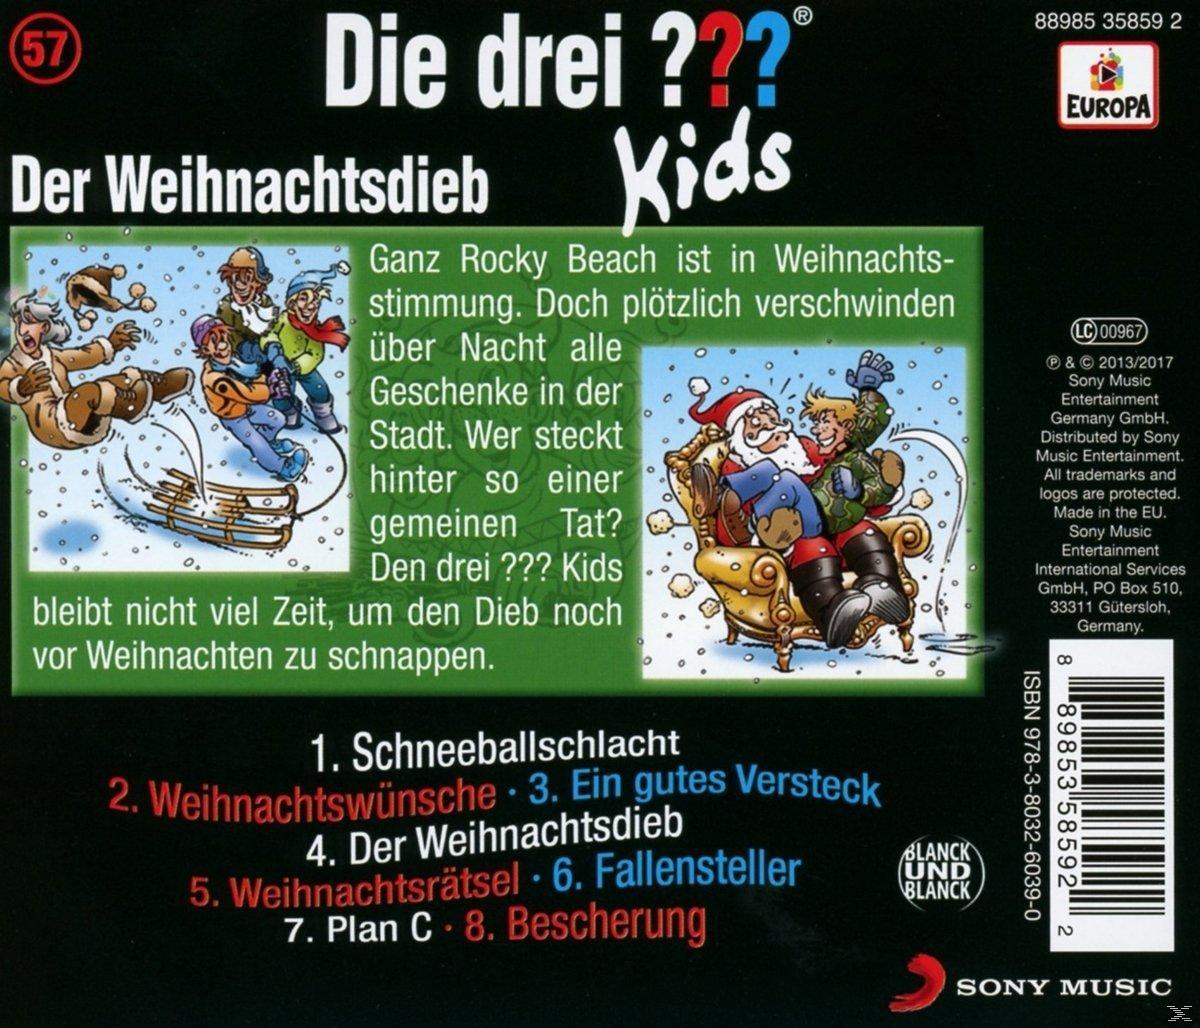 Die Drei Kids Weihnachtsdieb - Der ??? (CD) 